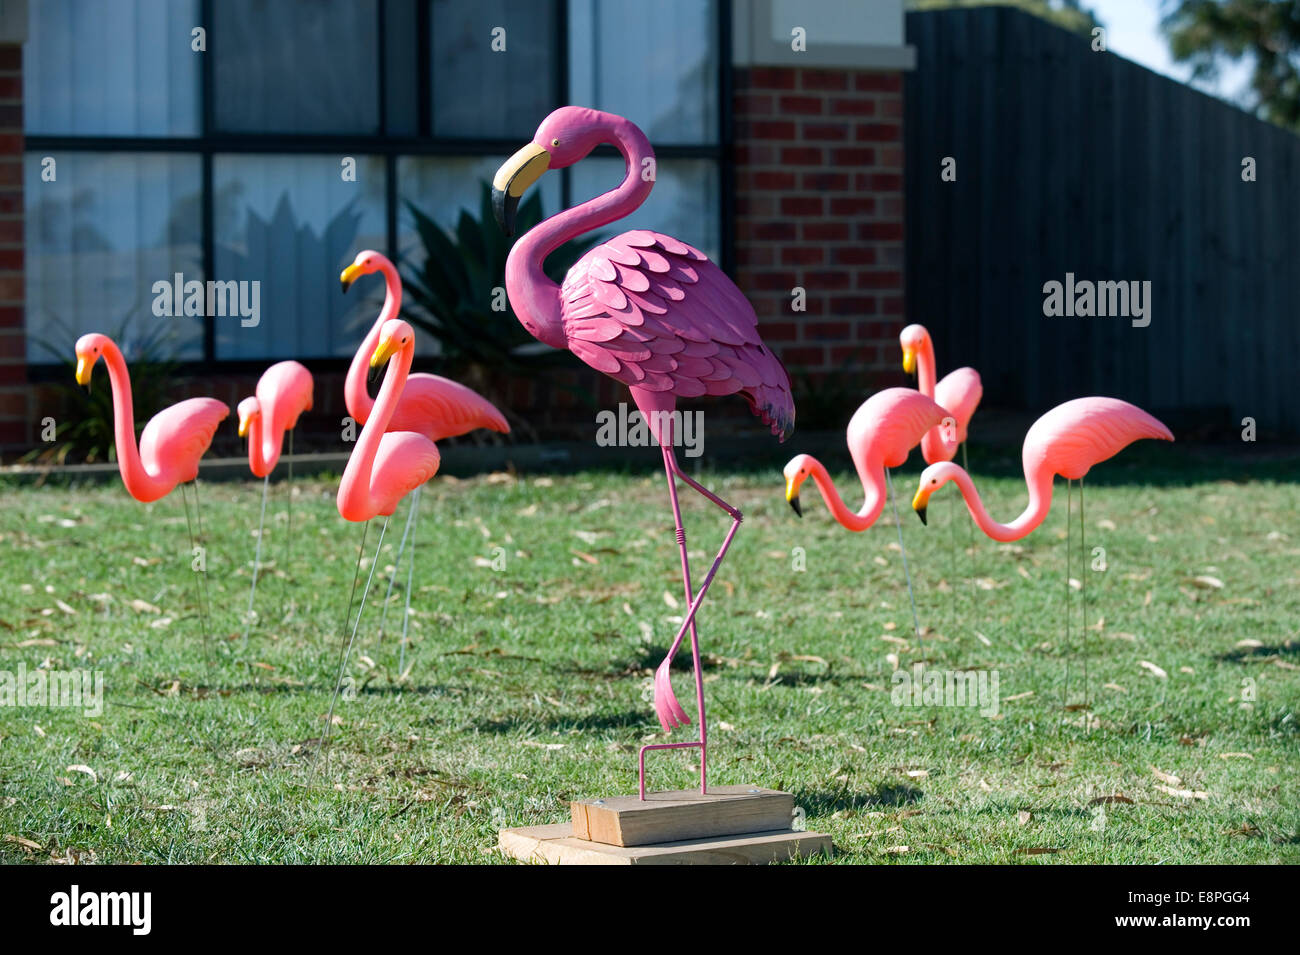 lawn flamingos Stock Photo